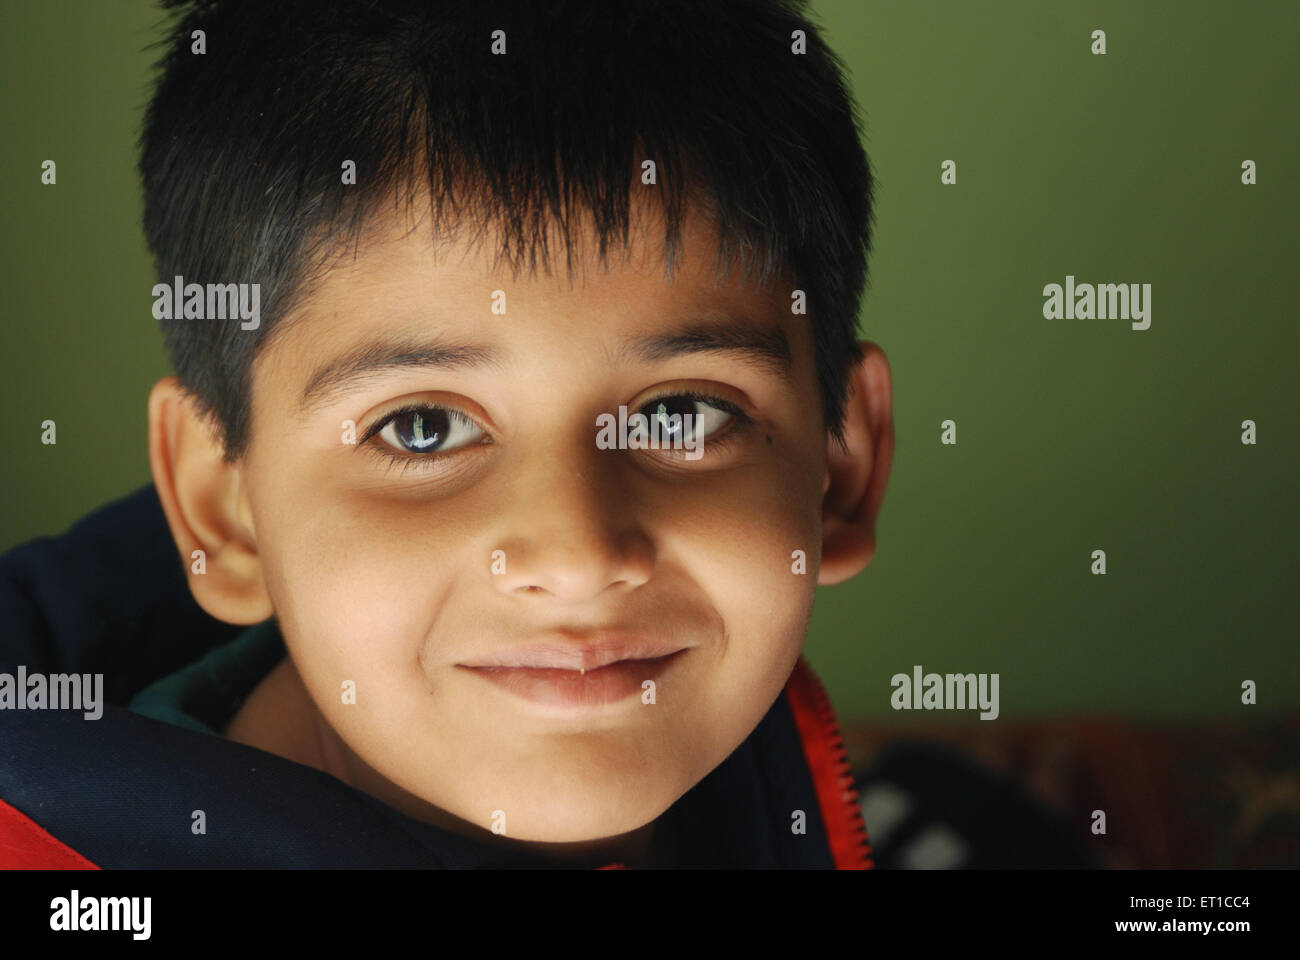 Indischer Junge Gesicht Porträt lächelnd Jodhpur Rajasthan Indien Asien HERR#704 Stockfoto